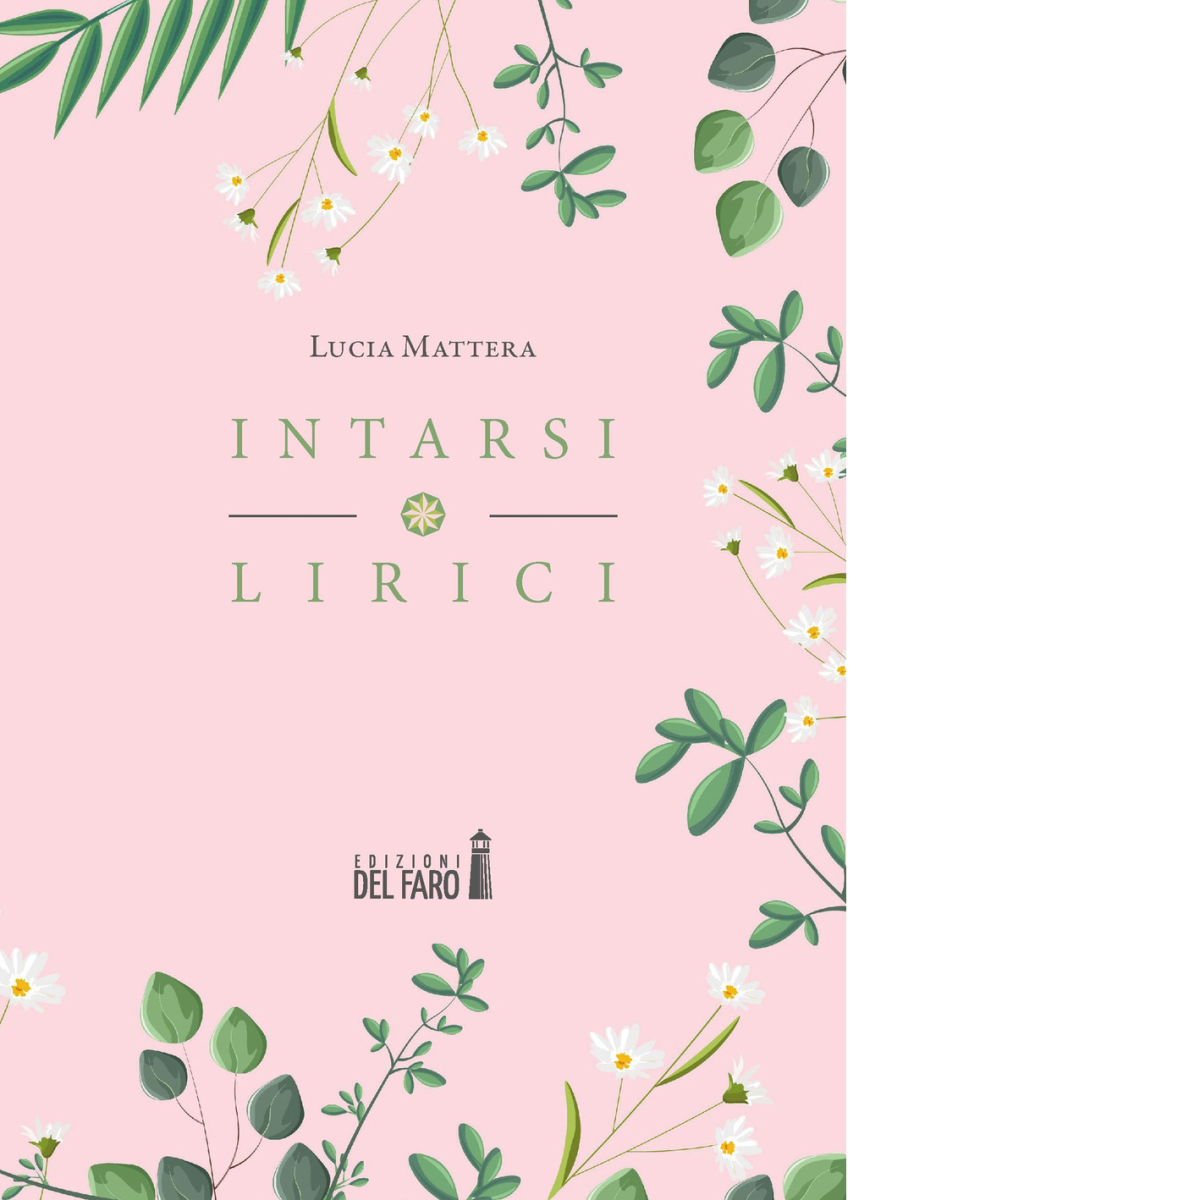  Intarsi lirici di Mattera Lucia - Edizioni Del faro, 2020